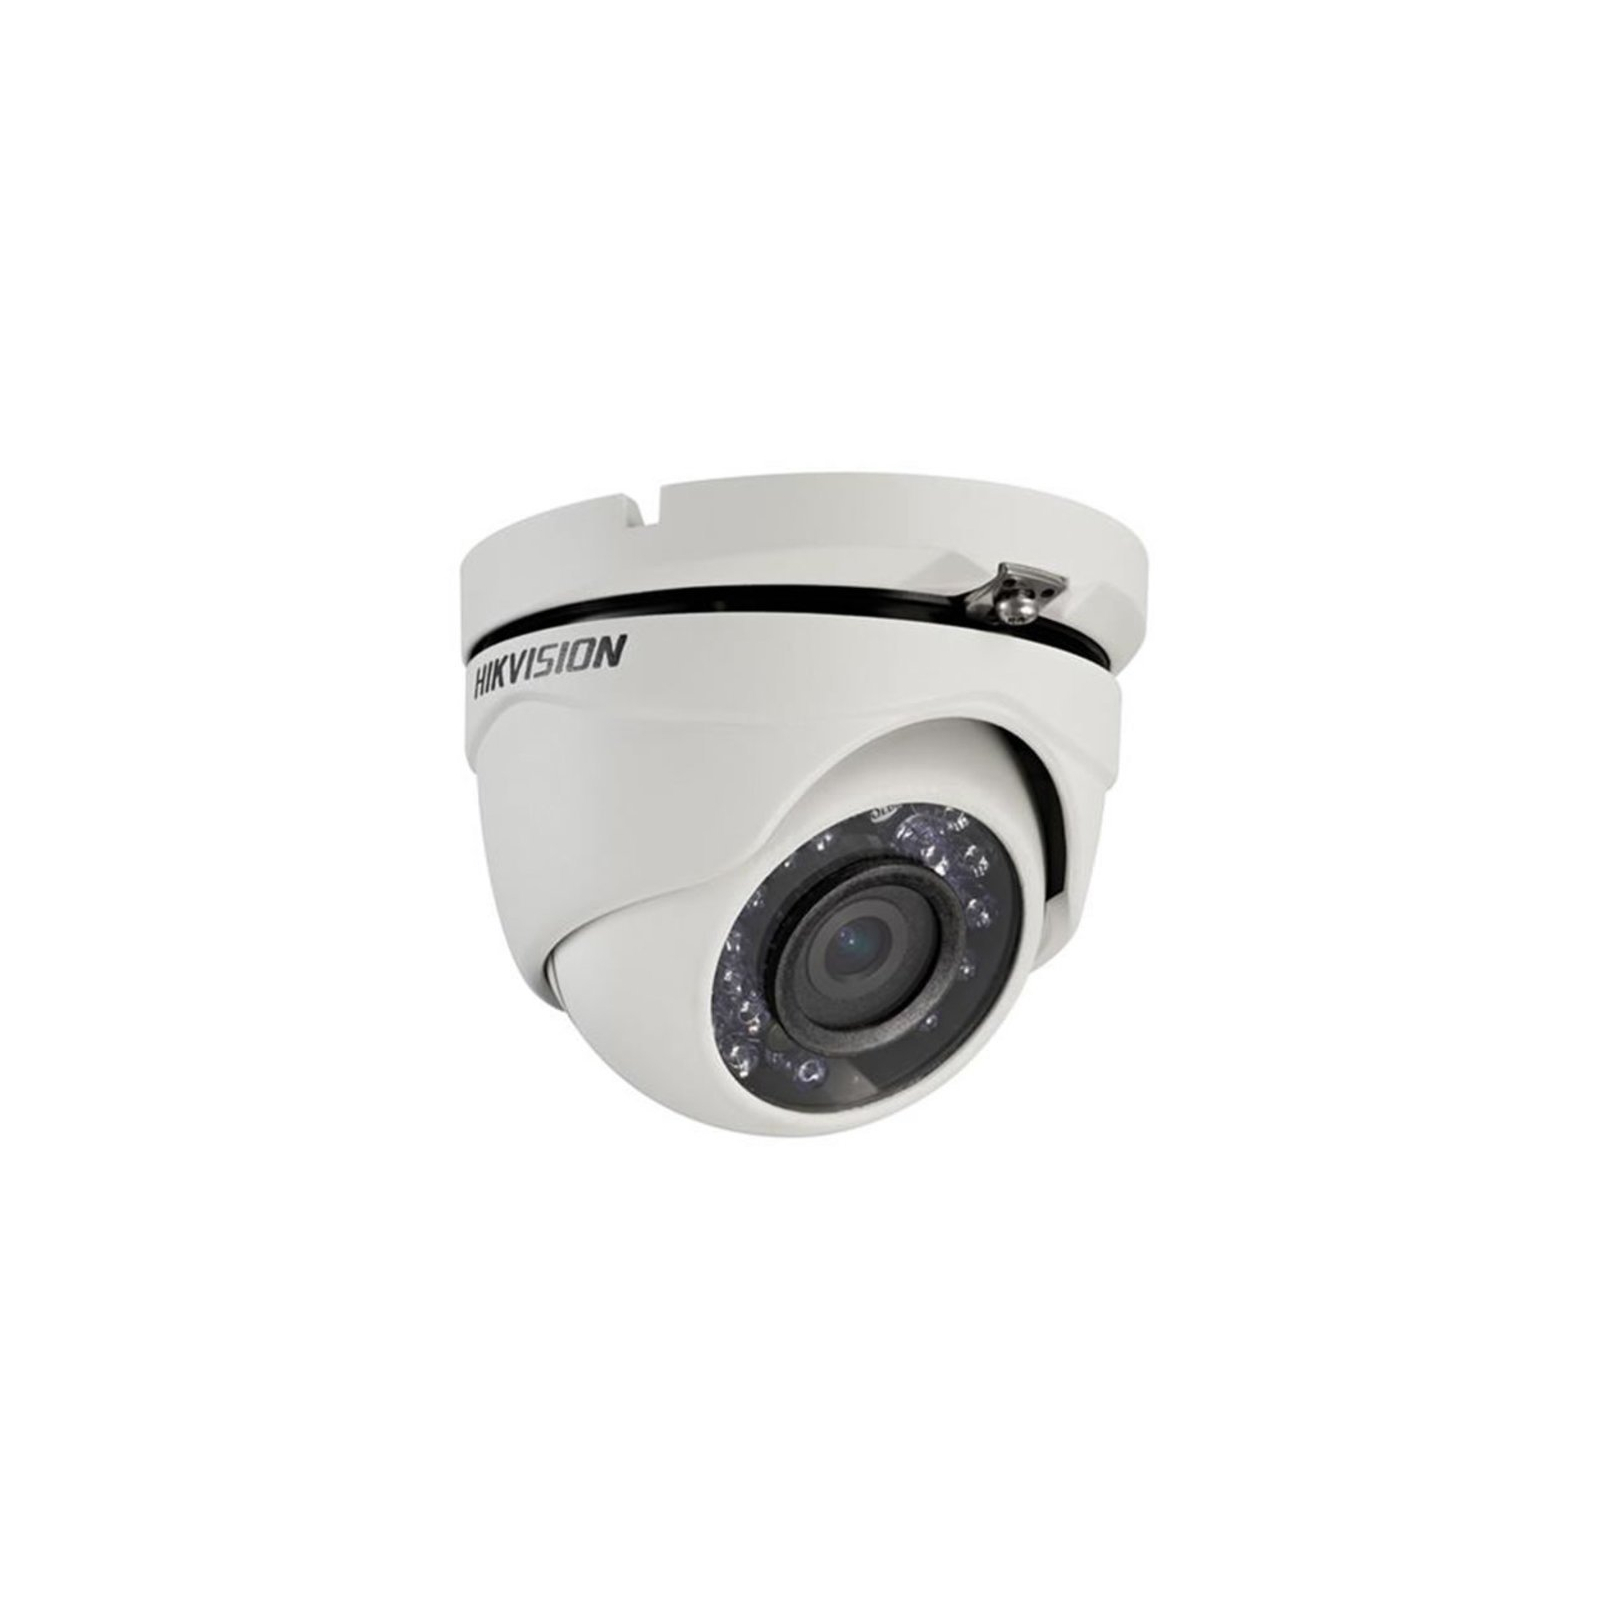 Камера відеоспостереження Hikvision DS-2CE56C0T-IRMF (2.8)